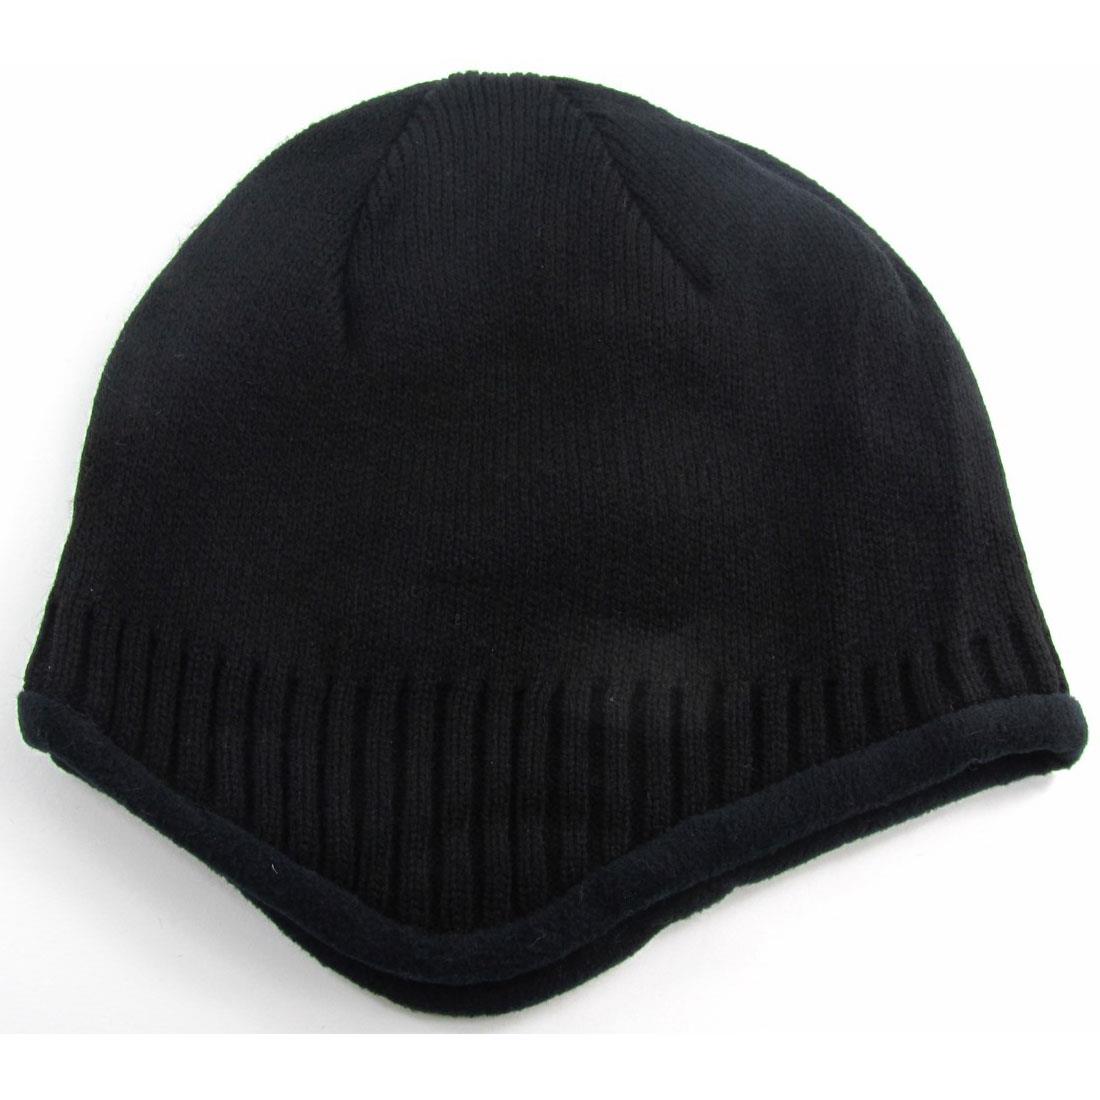 İçi Polarlı Kulaklıklı Erkek Bere Şapka 4 Renk cp181 - Siyah